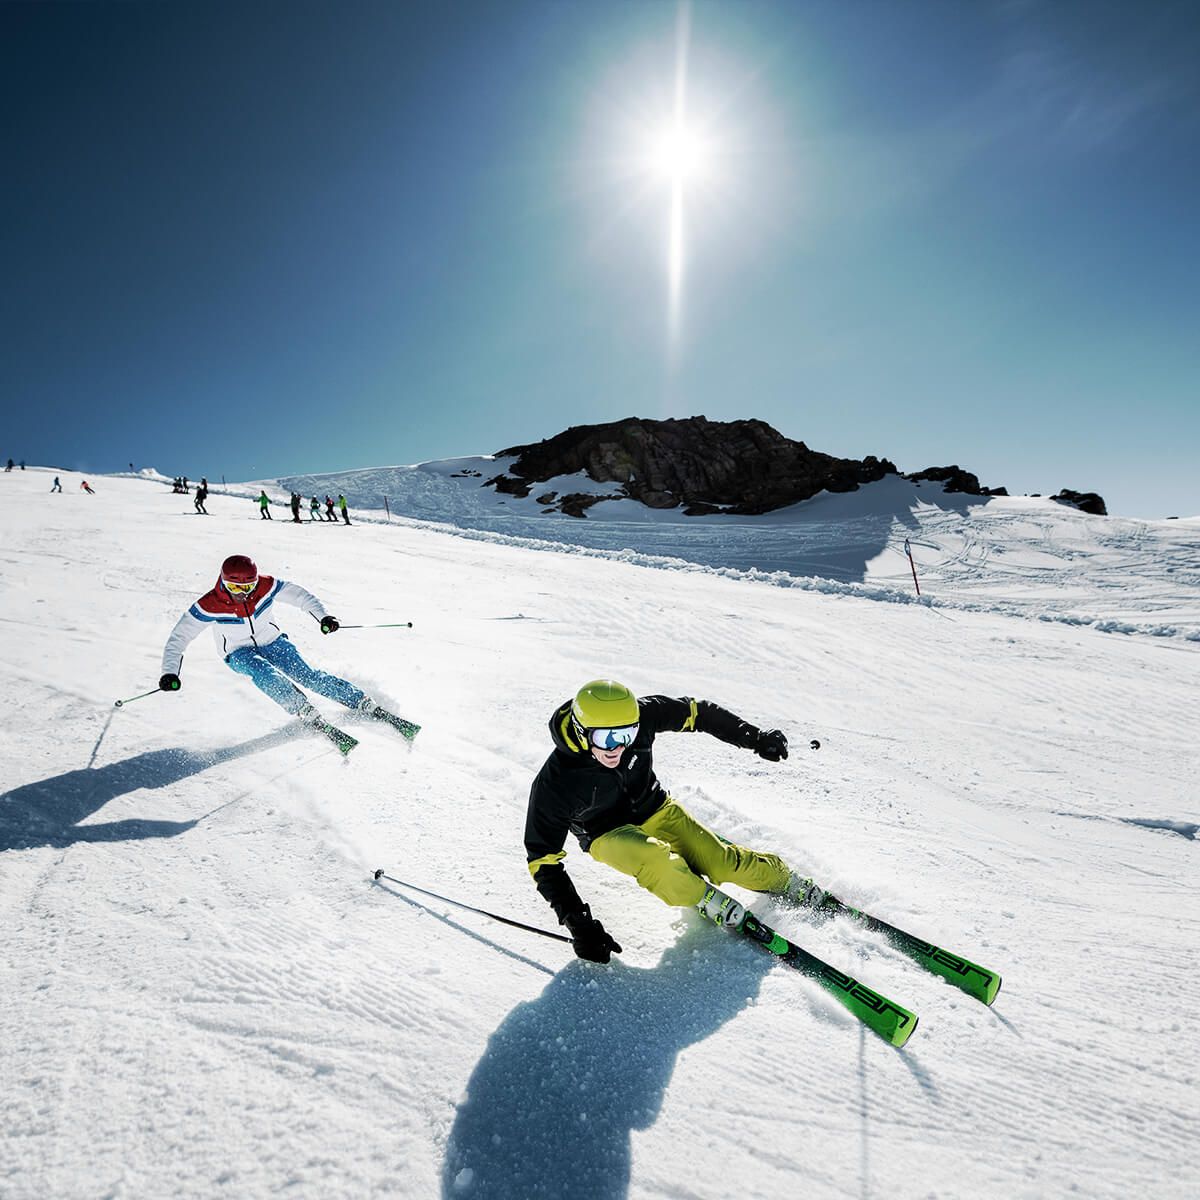 Горные лыжи Elan Scx Fusionx + Emx 12.0 GW Fus. X Blk/Grn 2021, green, 168 см